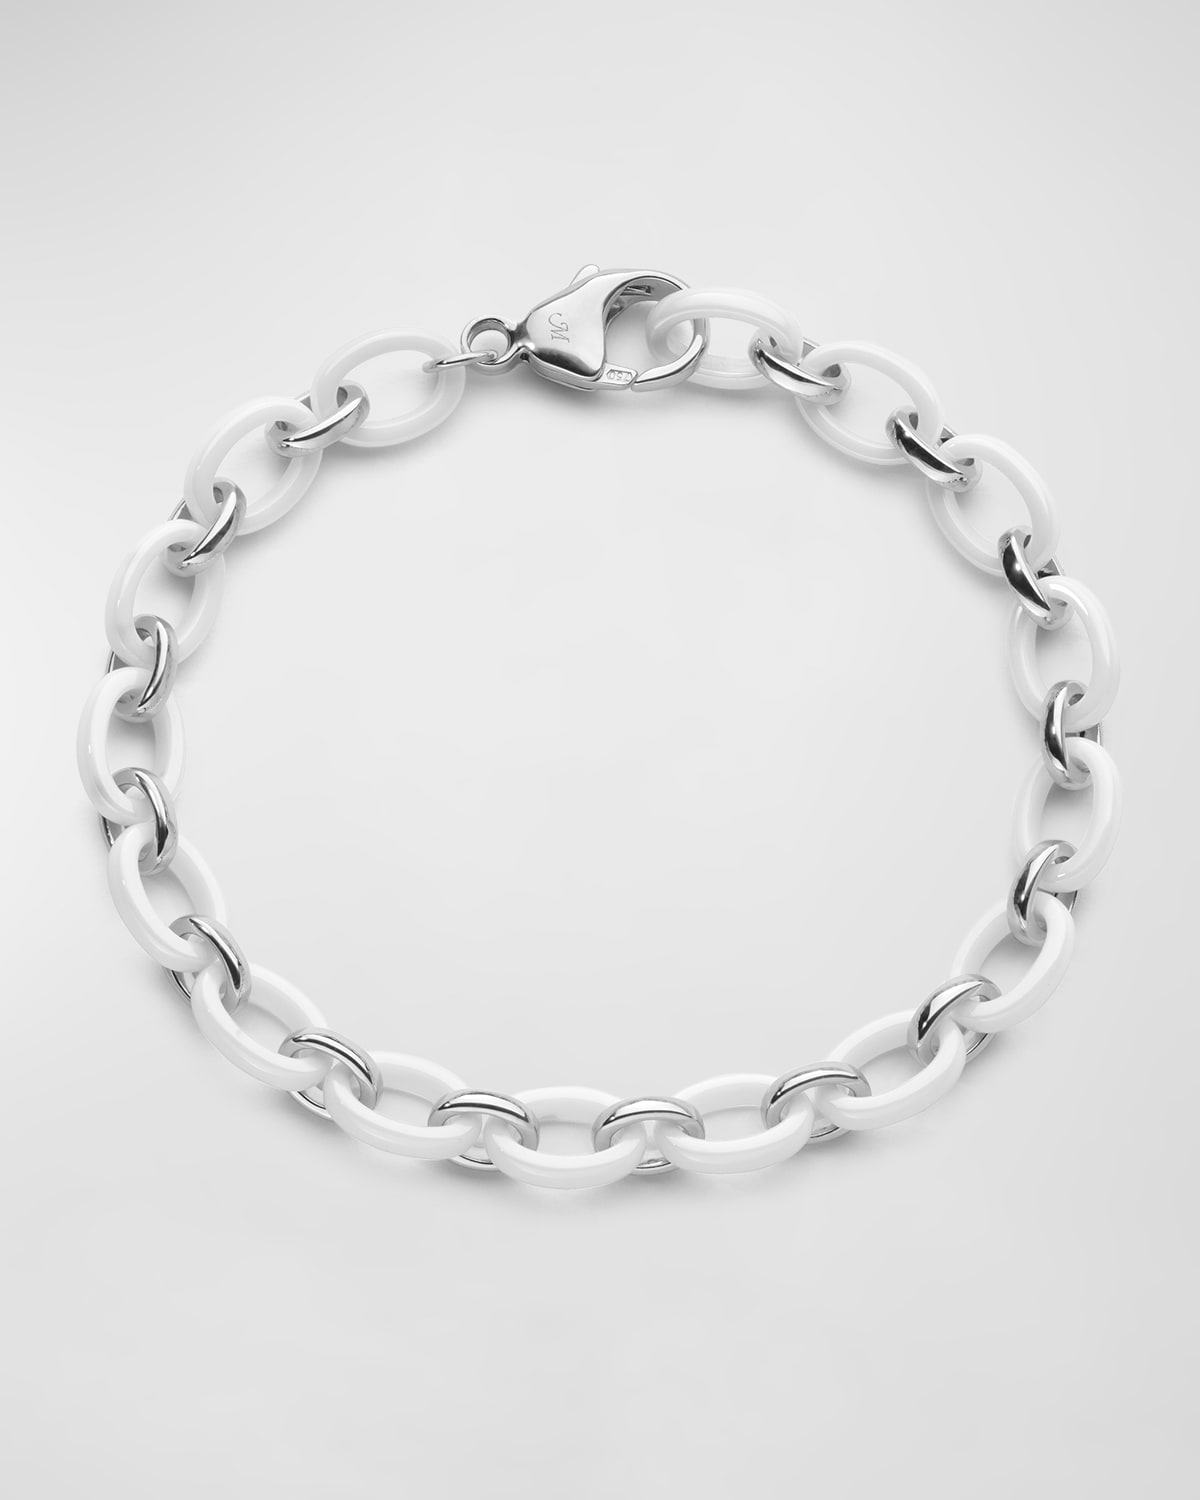 Sterling Silver Audrey Link Bracelet with Alternating Ceramic Links